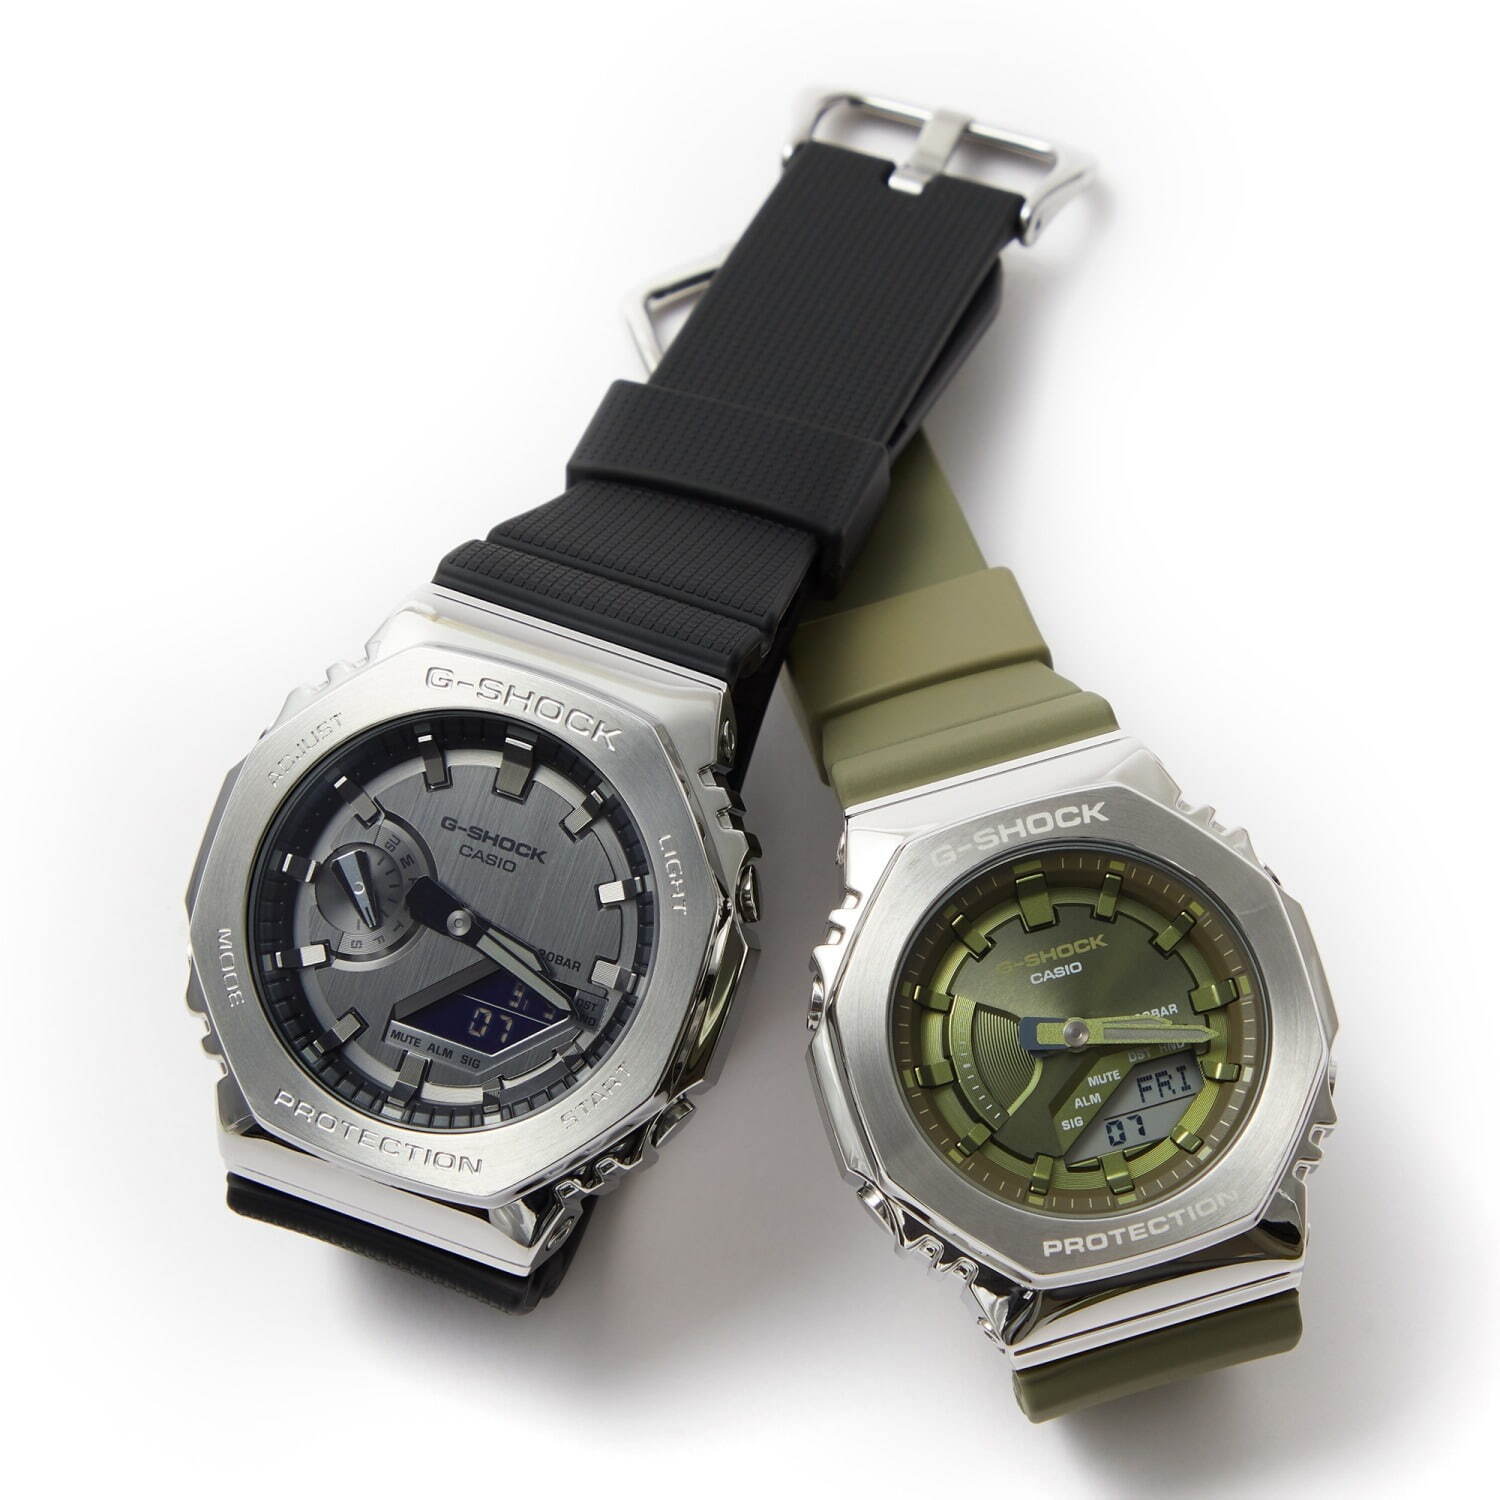 G-SHOCKBABY-Gのペアウォッチ特集、クリスマスプレゼントやギフトに贈る腕時計 ファッションプレス